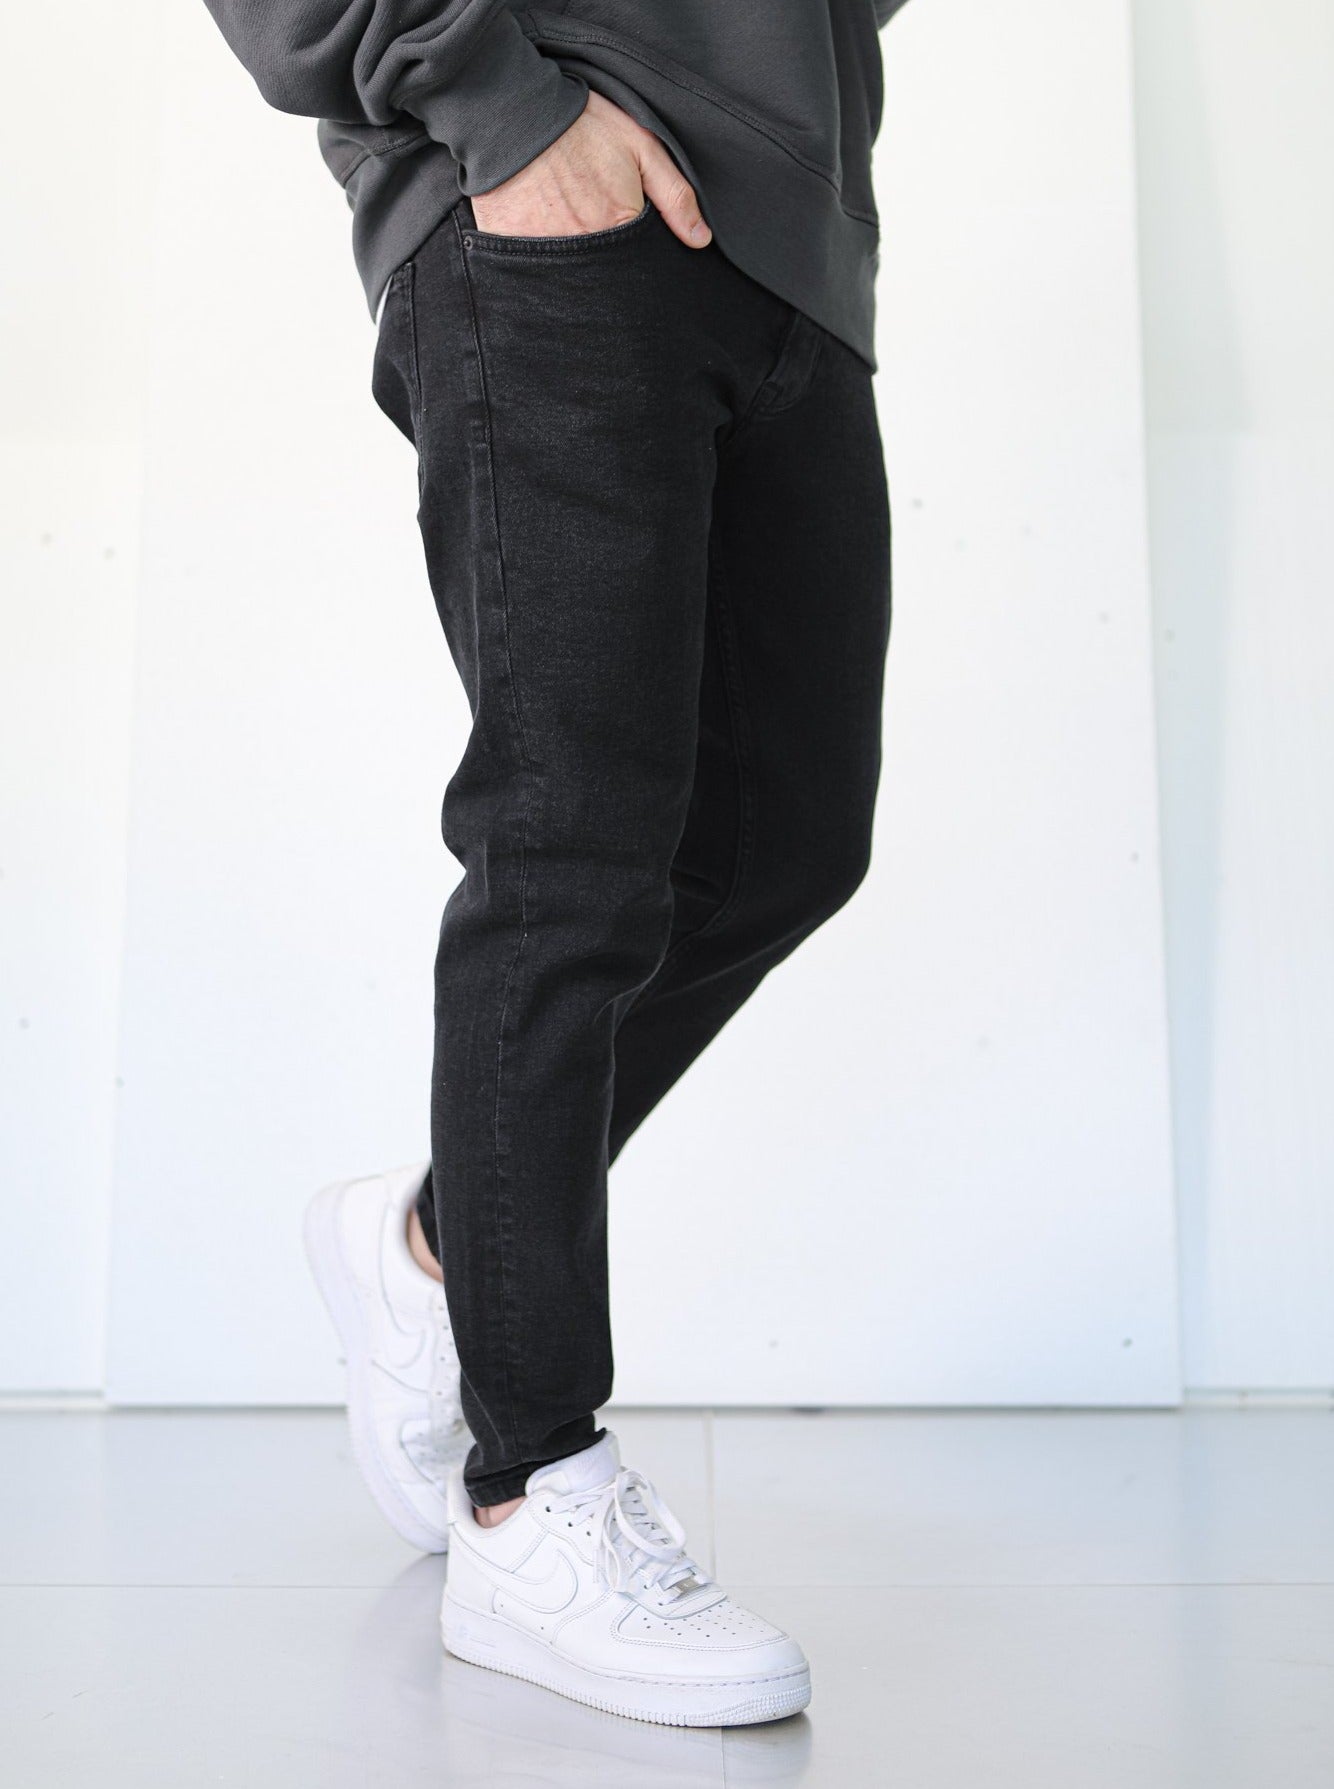 Basic Premium Black Jeans - UNEFFECTED STUDIOS® - JEANS - UNEFFECTED